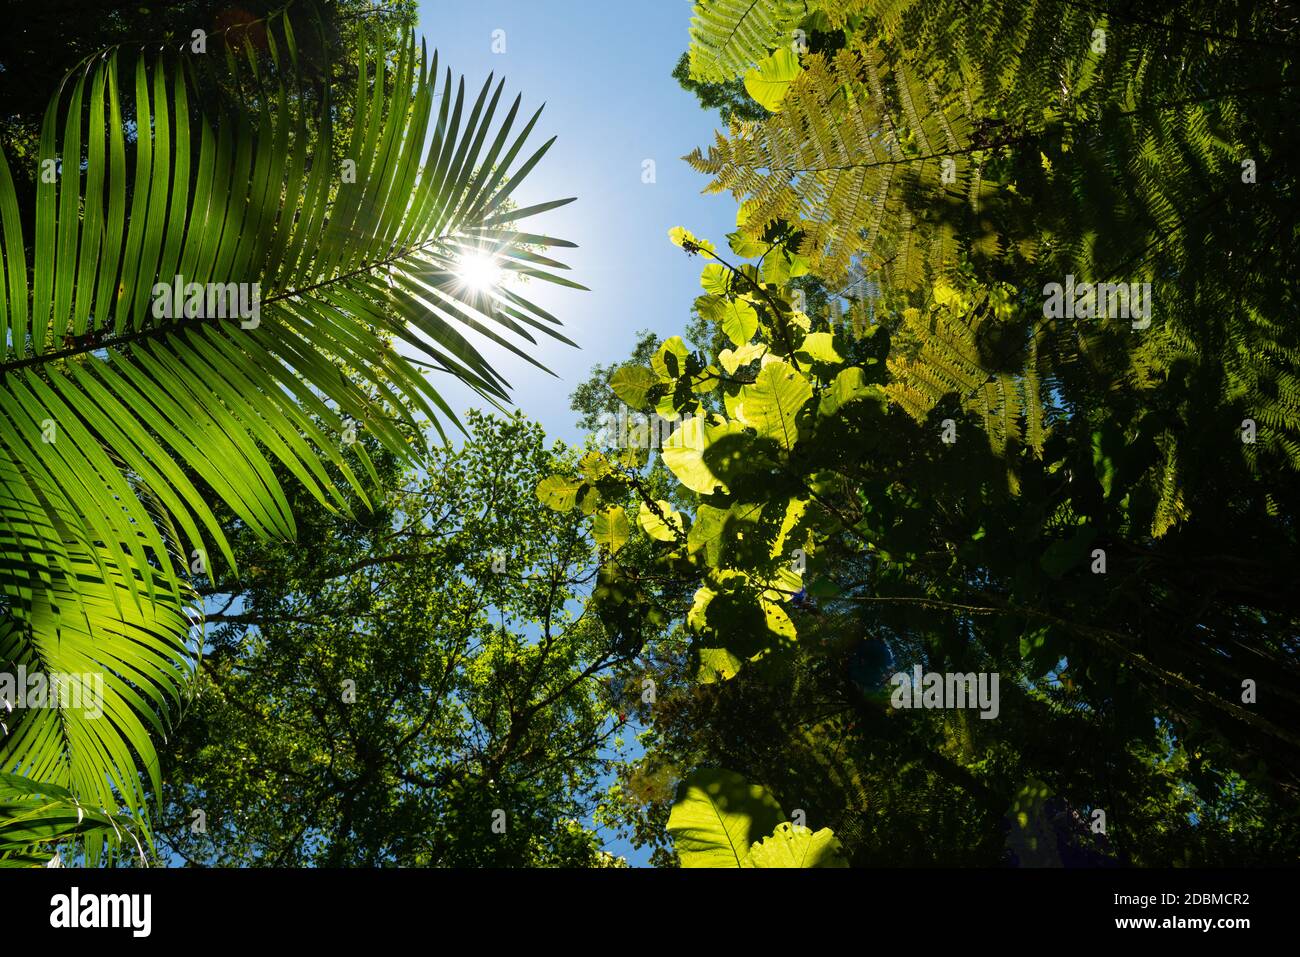 Forêt tropicale de l'Atlantique végétation luxuriante vue de l'intérieur de la forêt Banque D'Images